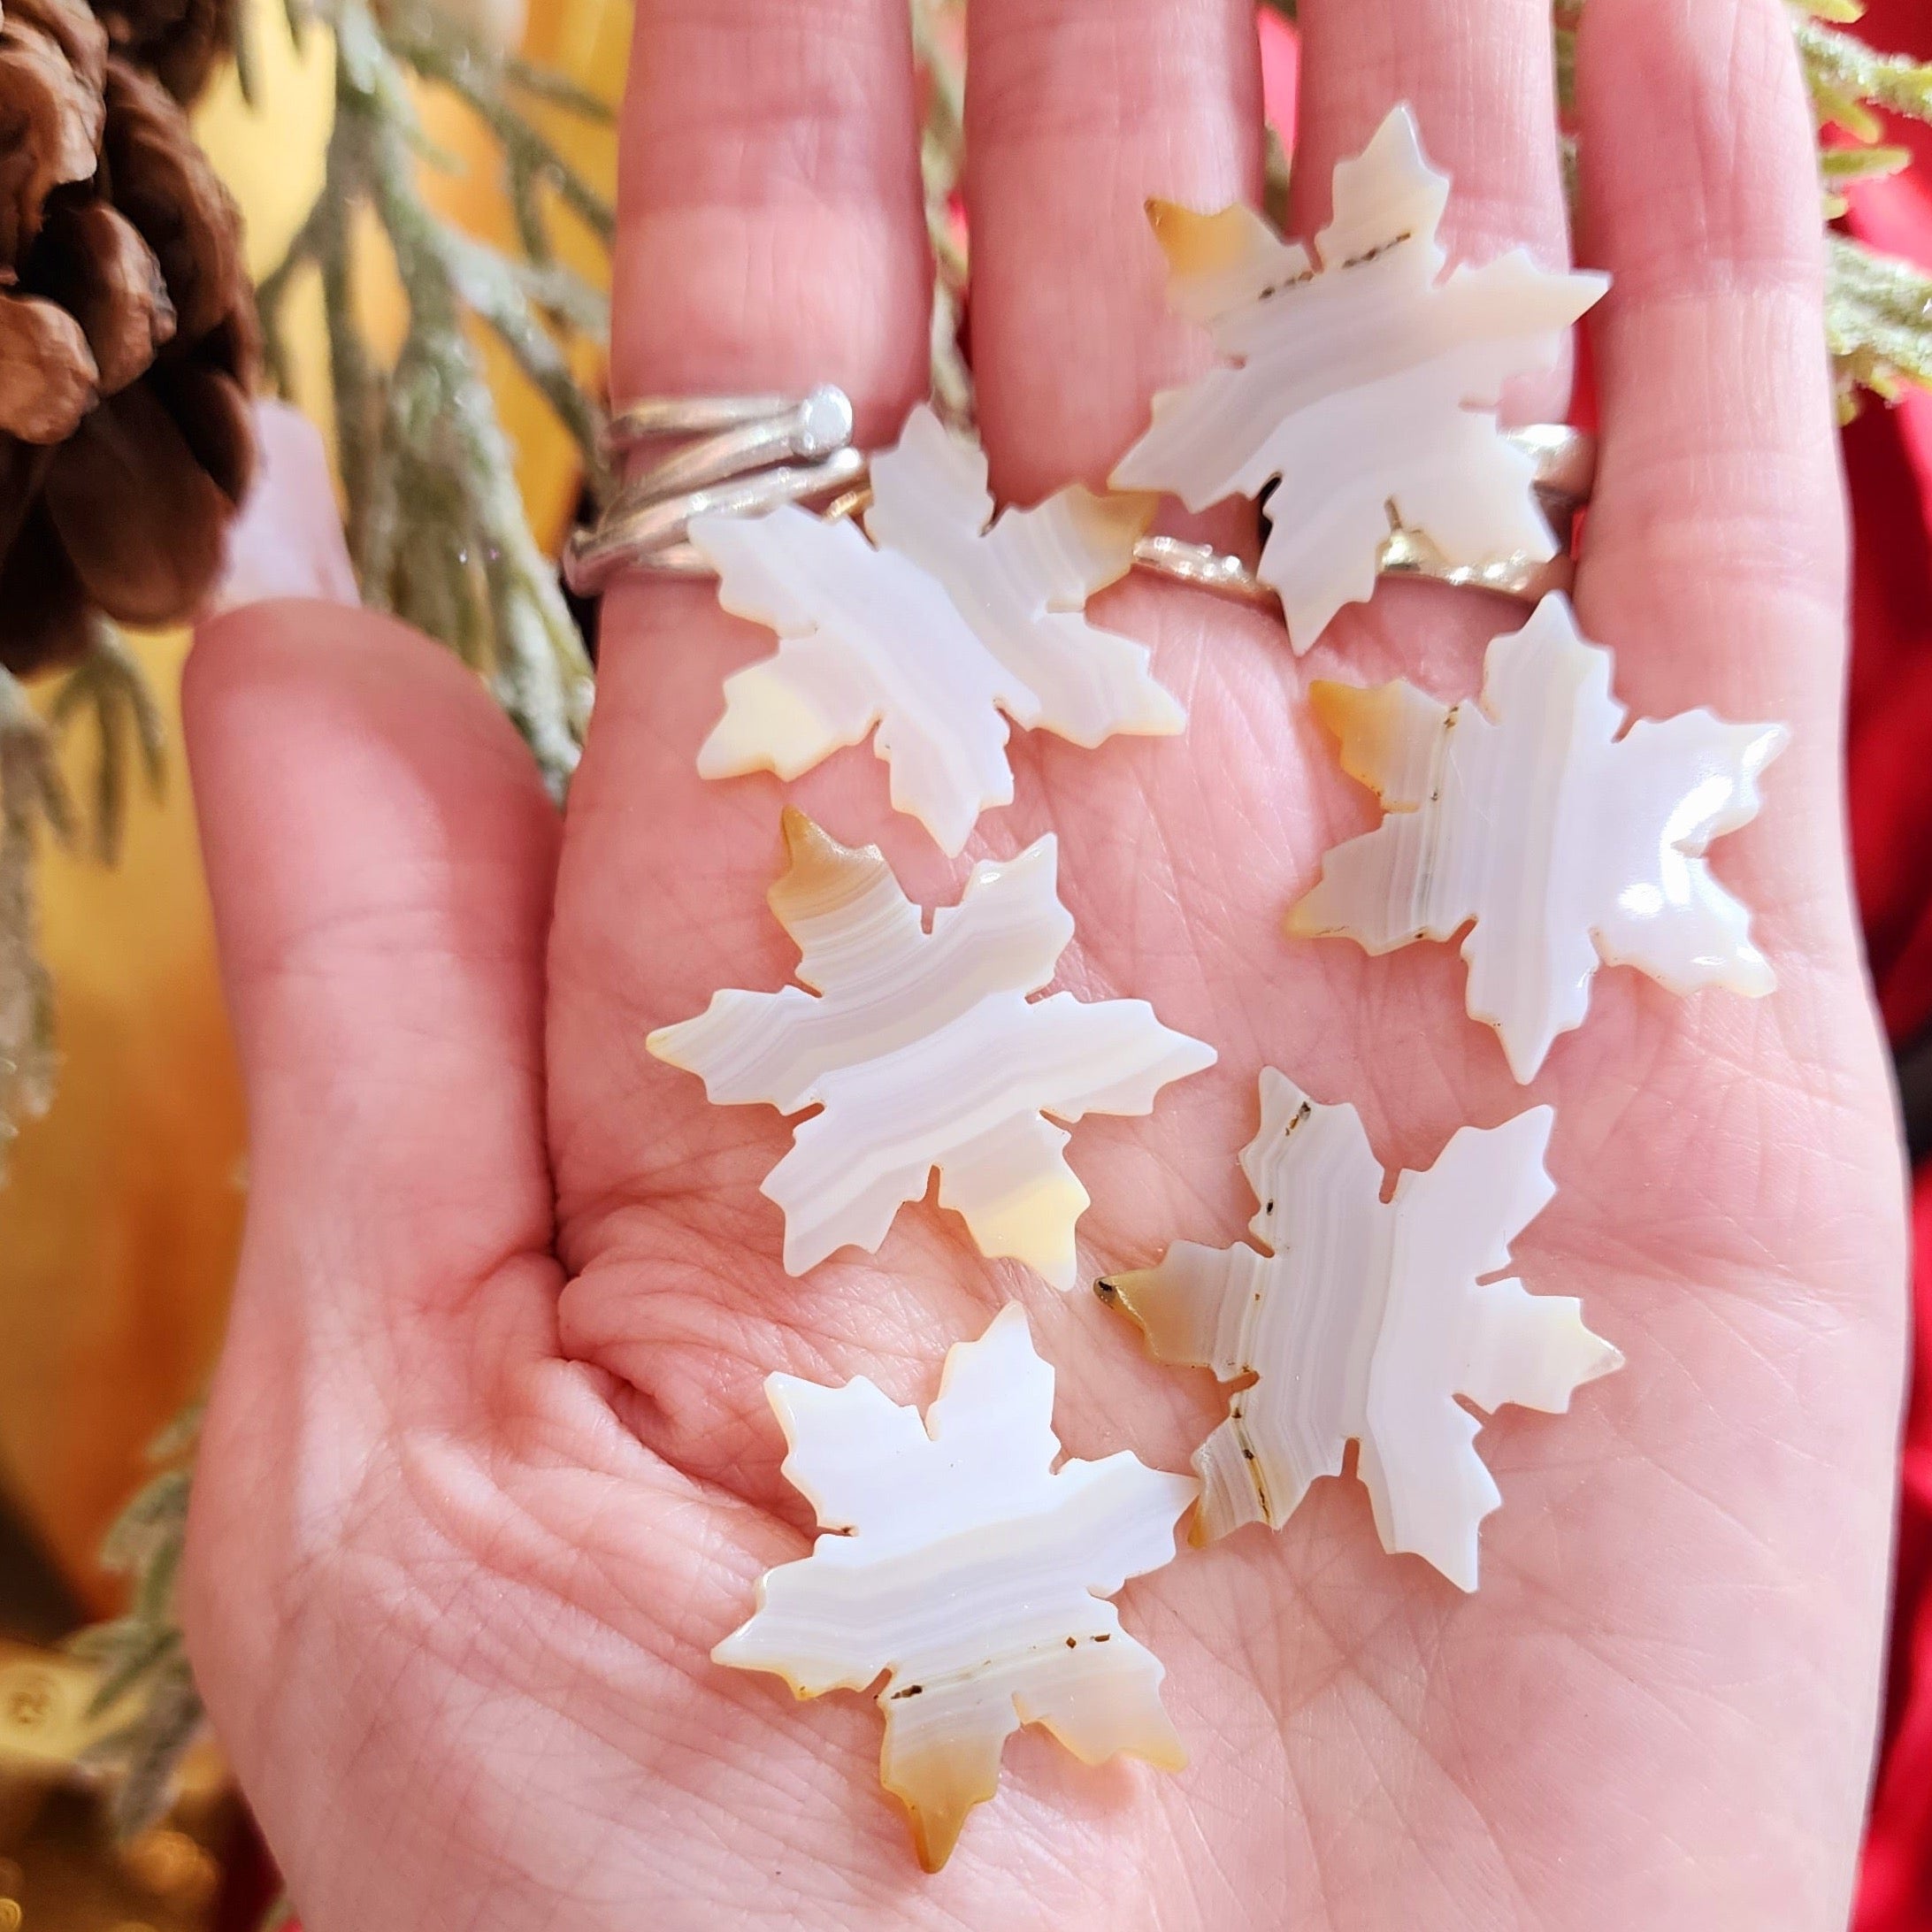 Iris Agate Snowflake Carving for Optimism and Spiritual Awareness